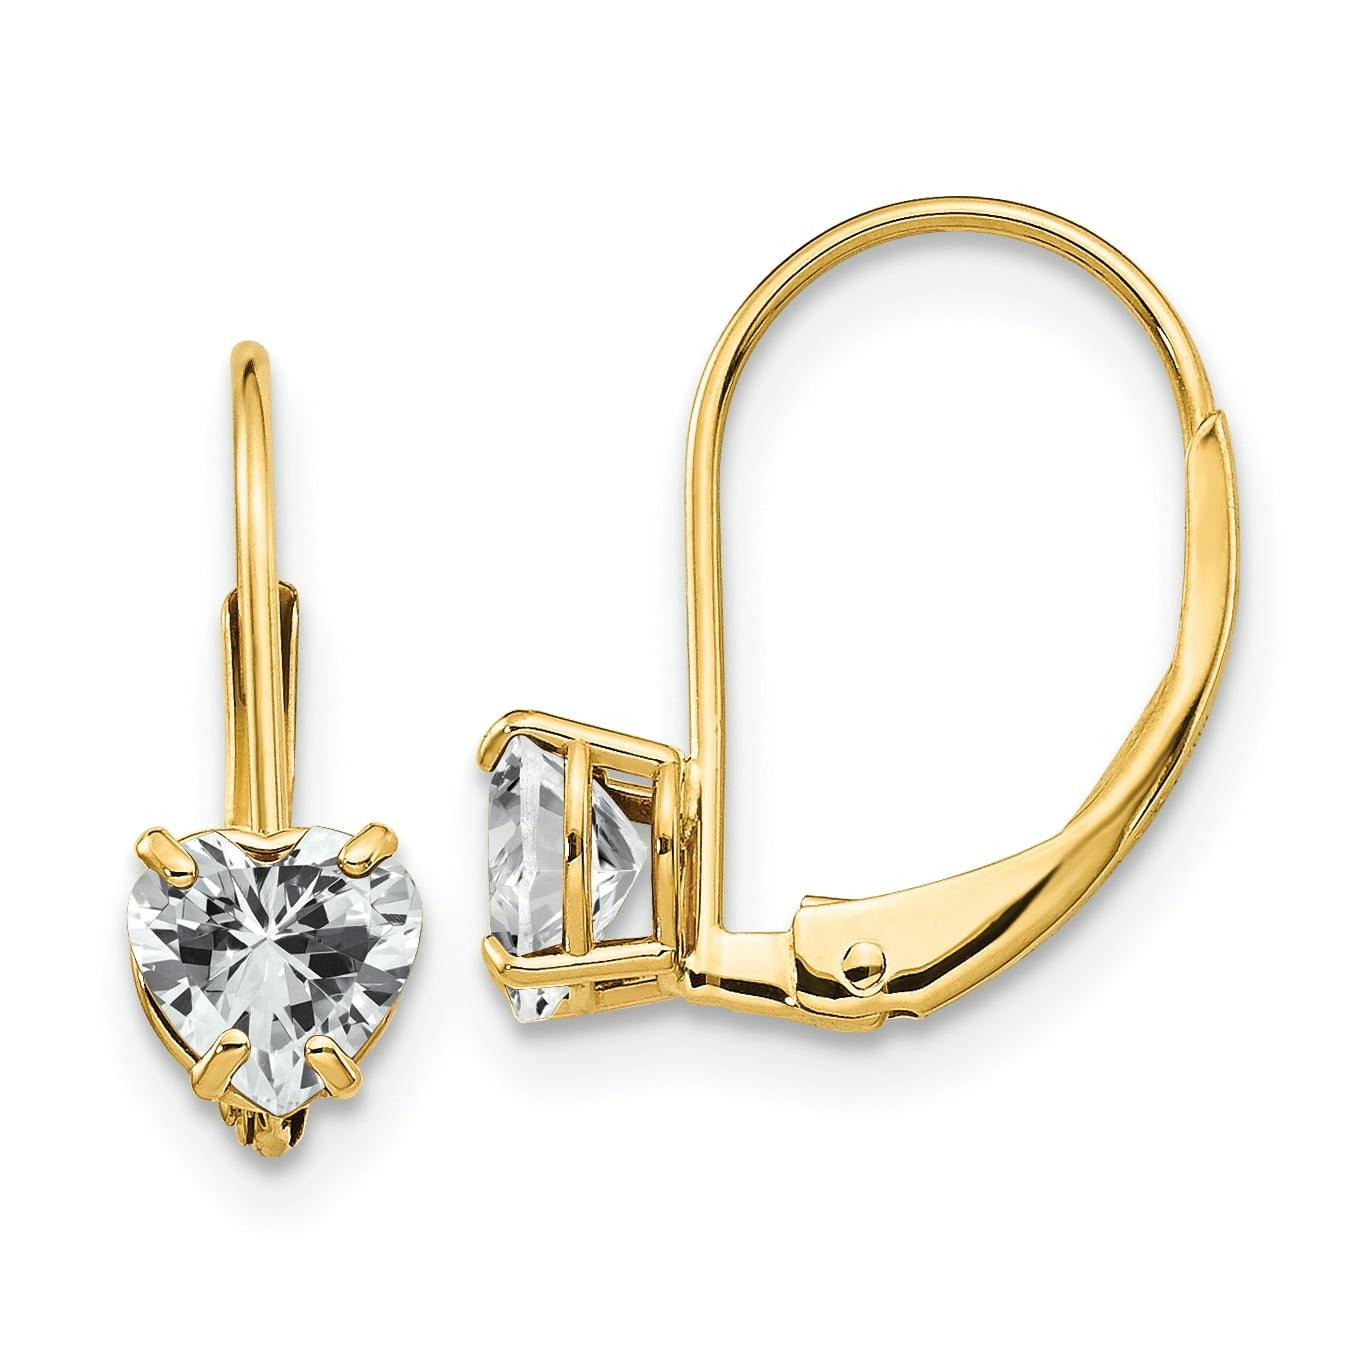 Elegant 14K Gold Heart-Shaped Cubic Zirconia Leverback Earrings